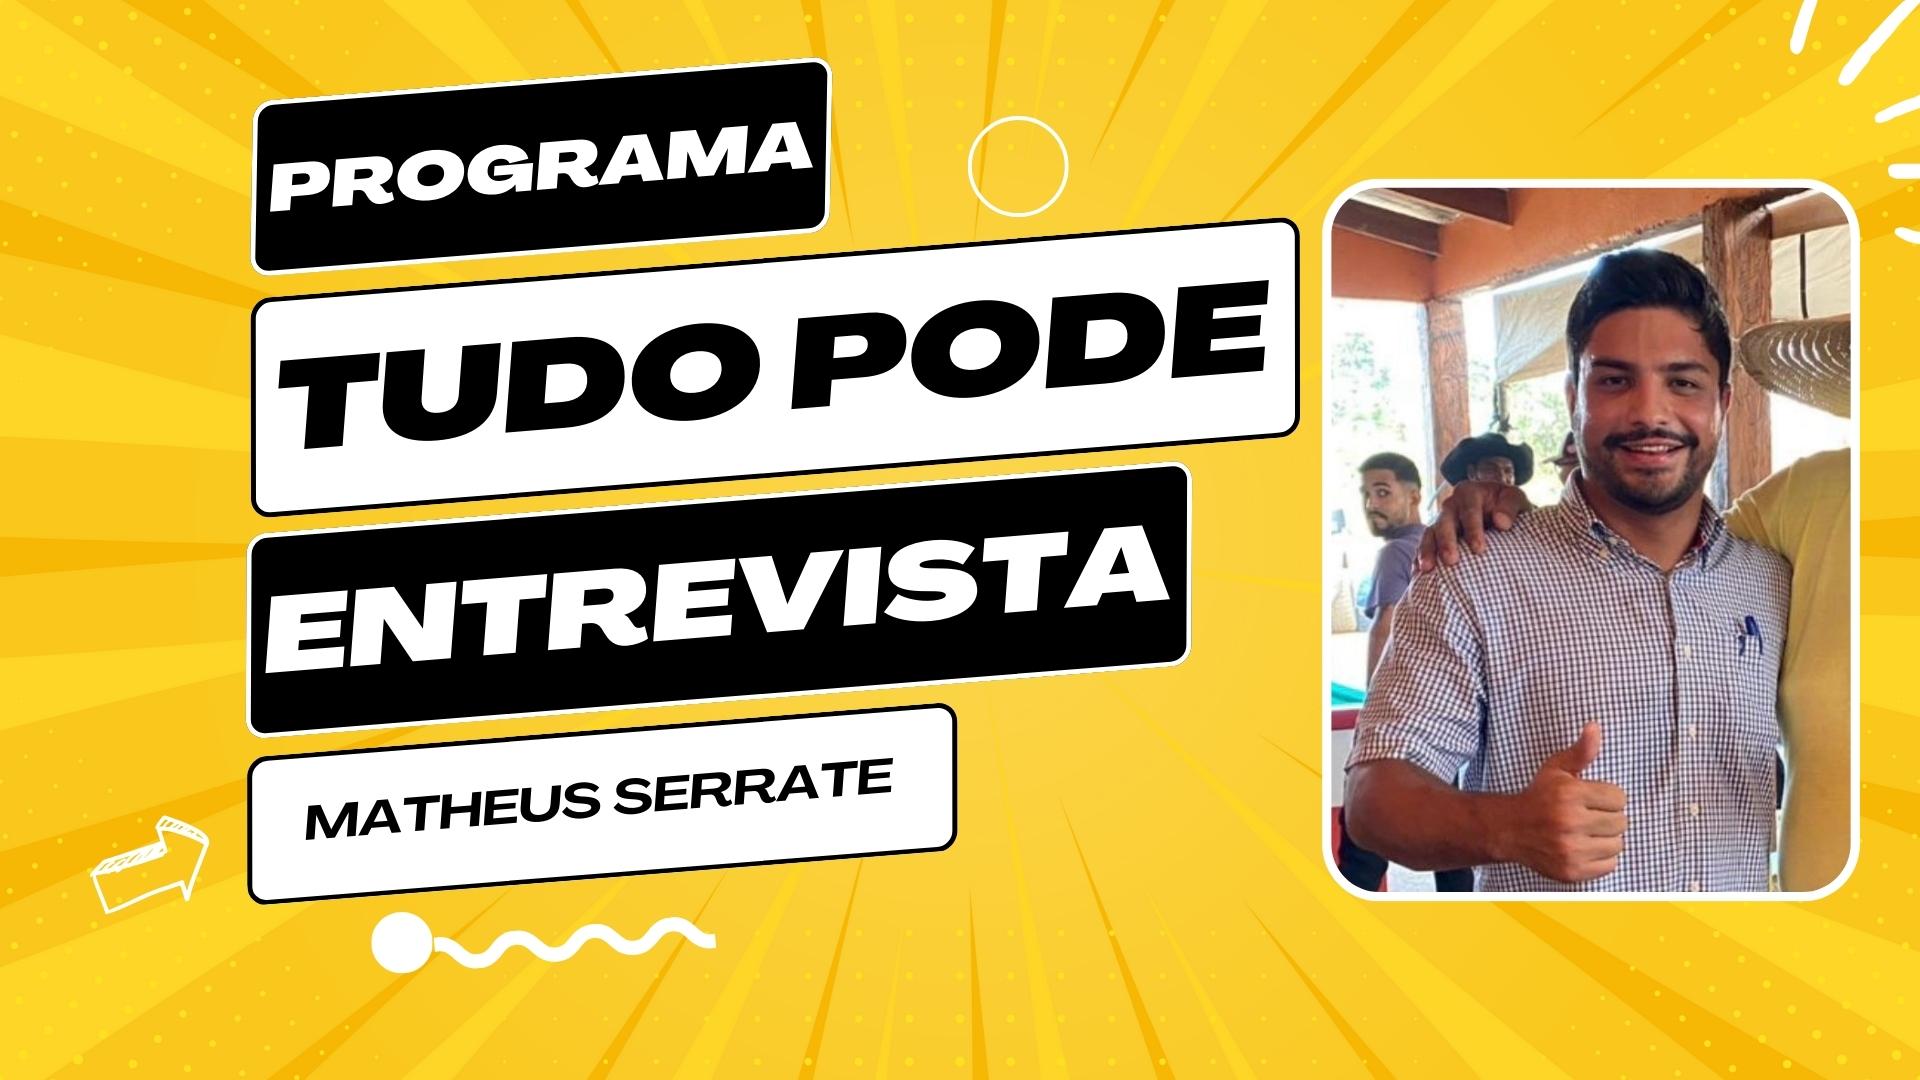 PodCast Tudo PodE entrevista: Matheus Serrate - News Rondônia